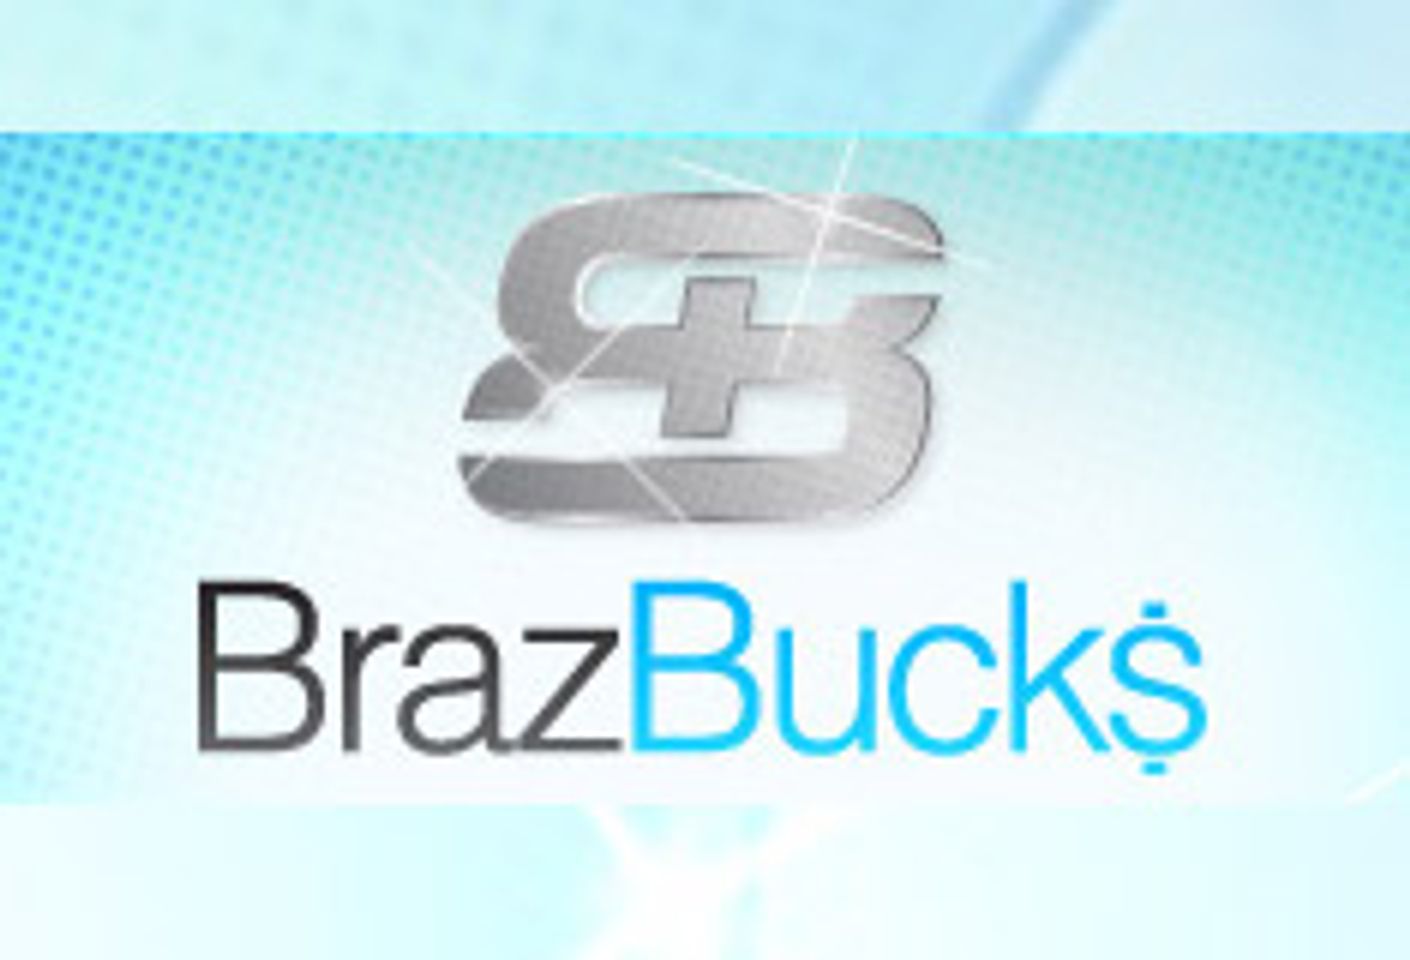 BrazBucks Launches